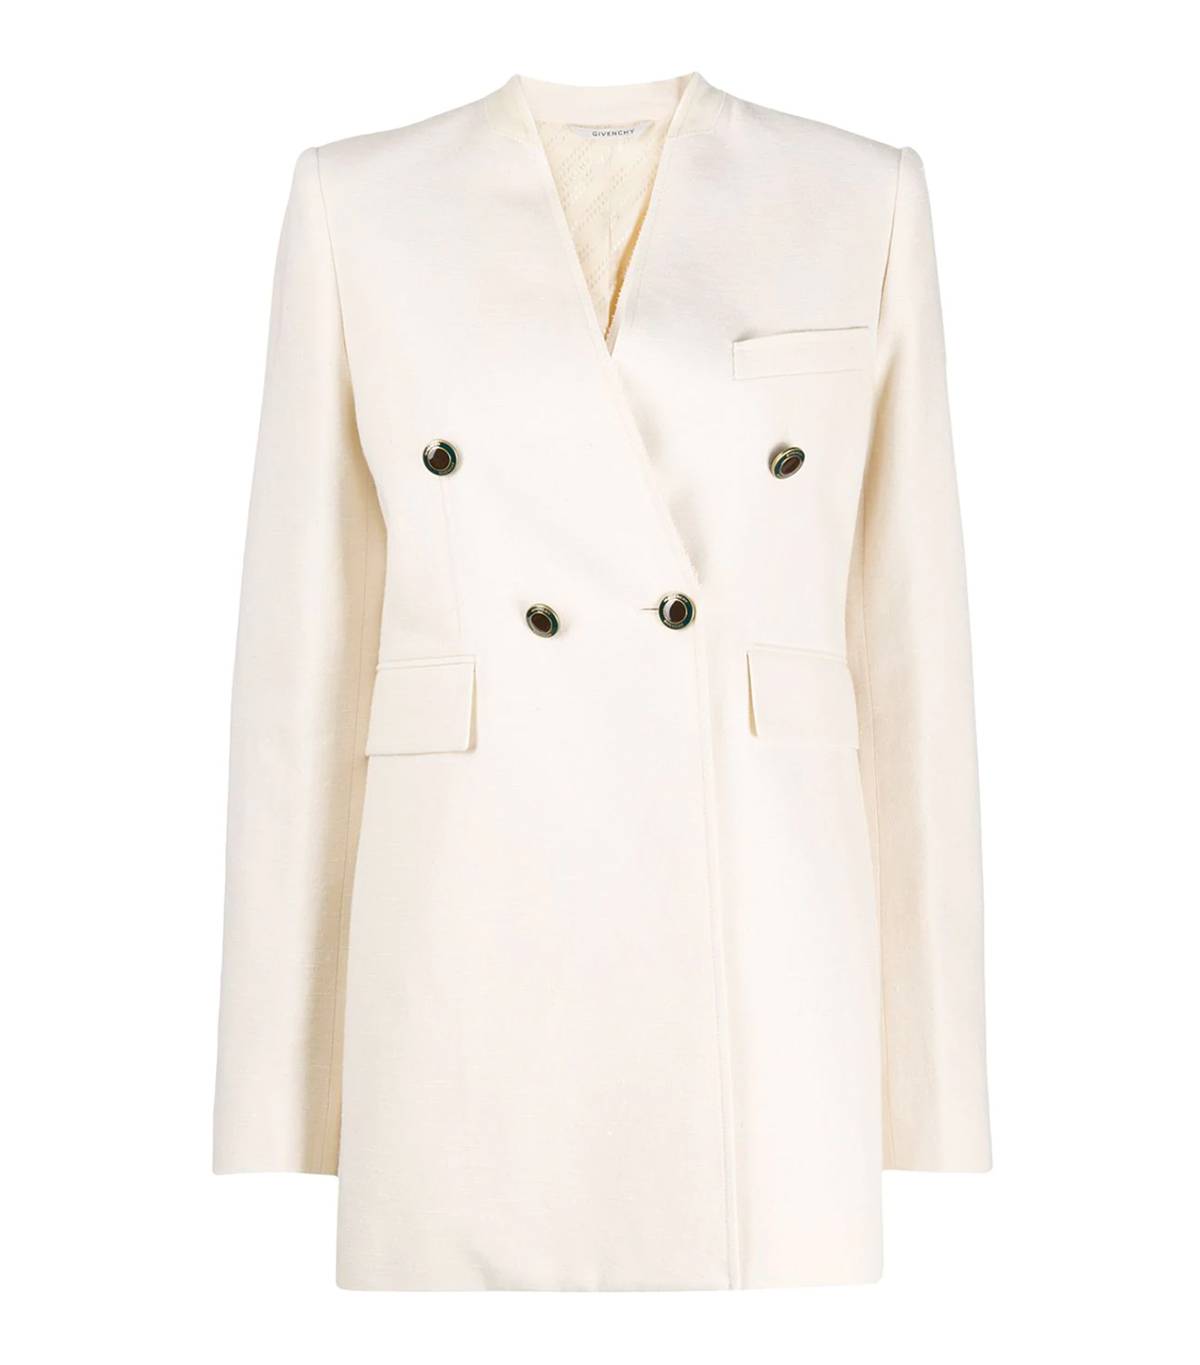 Áo blazer không cổ với màu sắc nhã nhặn của Givenchy.